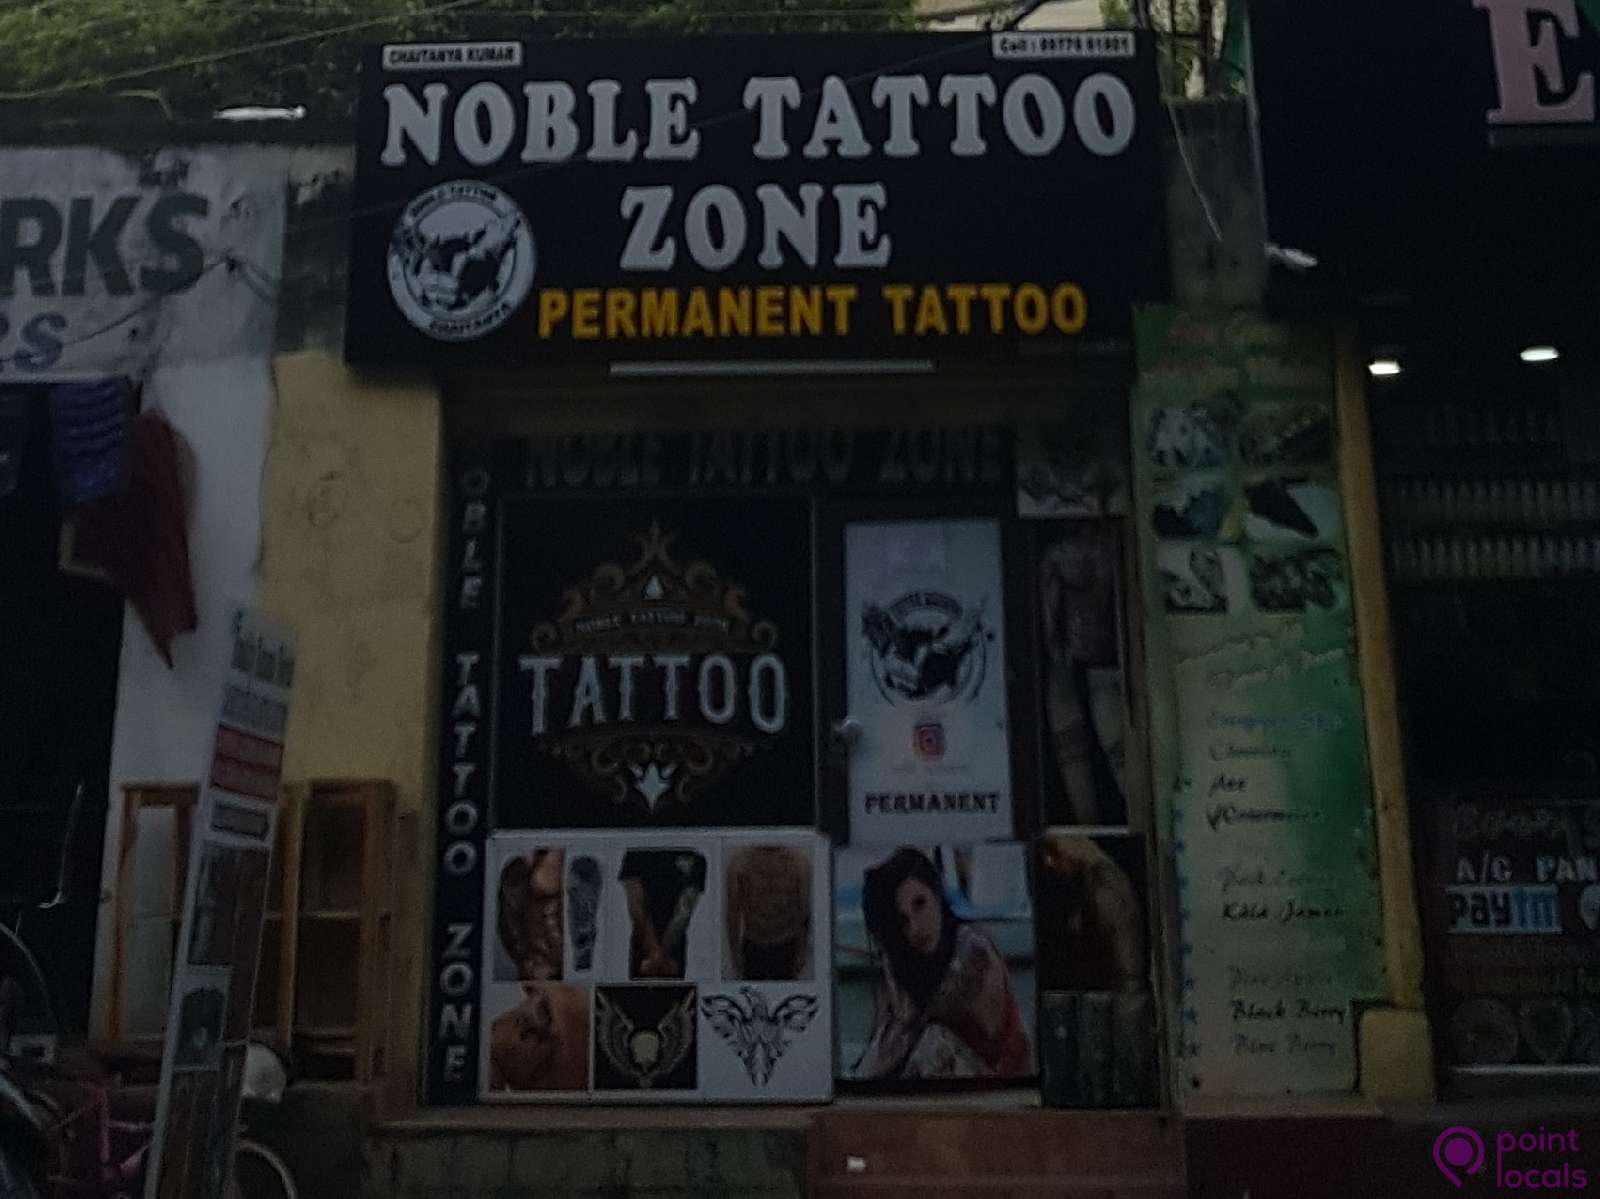 Feather tattoo Rohit s gaud | Western tattoos, Tattoo zone, Tattoos